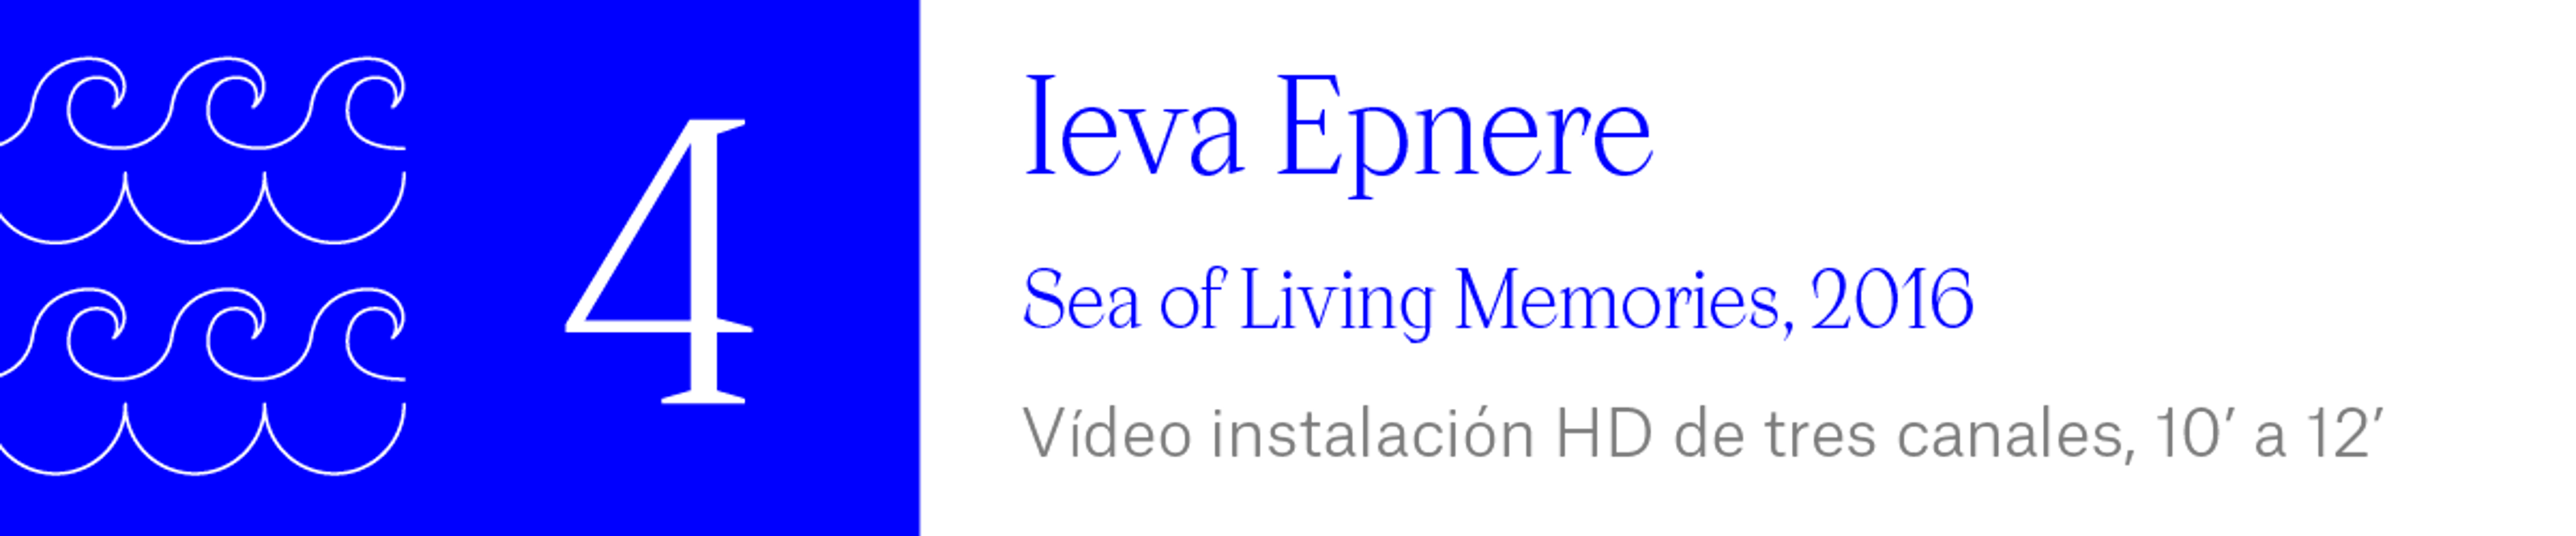 The Wave (4) Ieva Epnere - Sea of Living Memories, 2016 Vídeo instalación HD de tres canales, 10’ a 12’